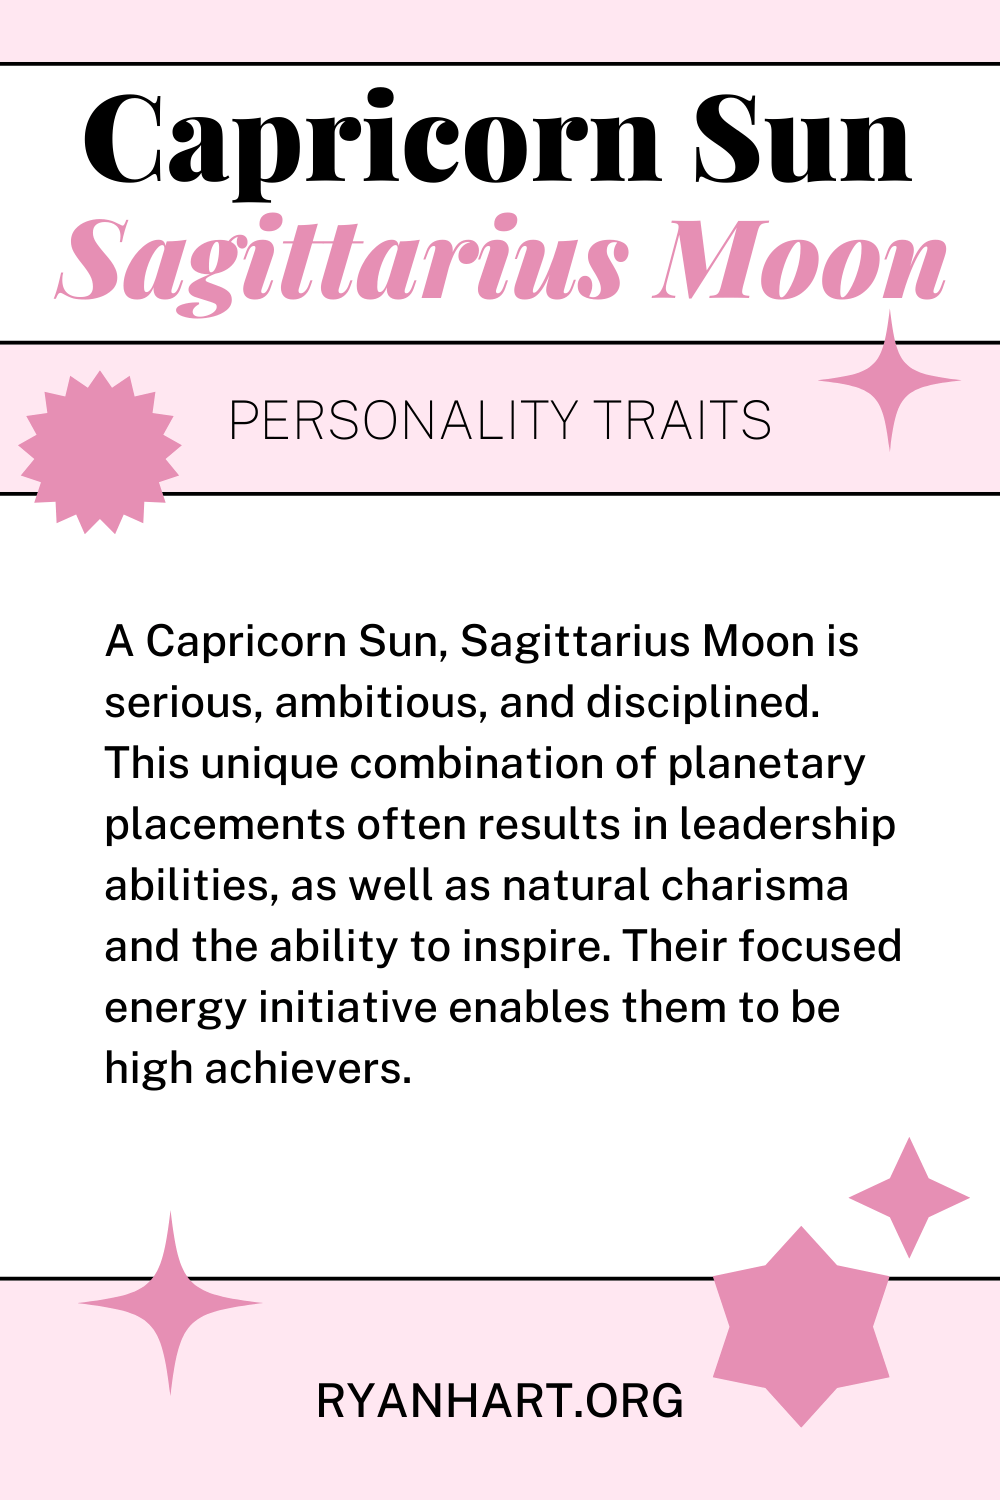  Capricorn Sol Sagitari Lluna Trets de personalitat